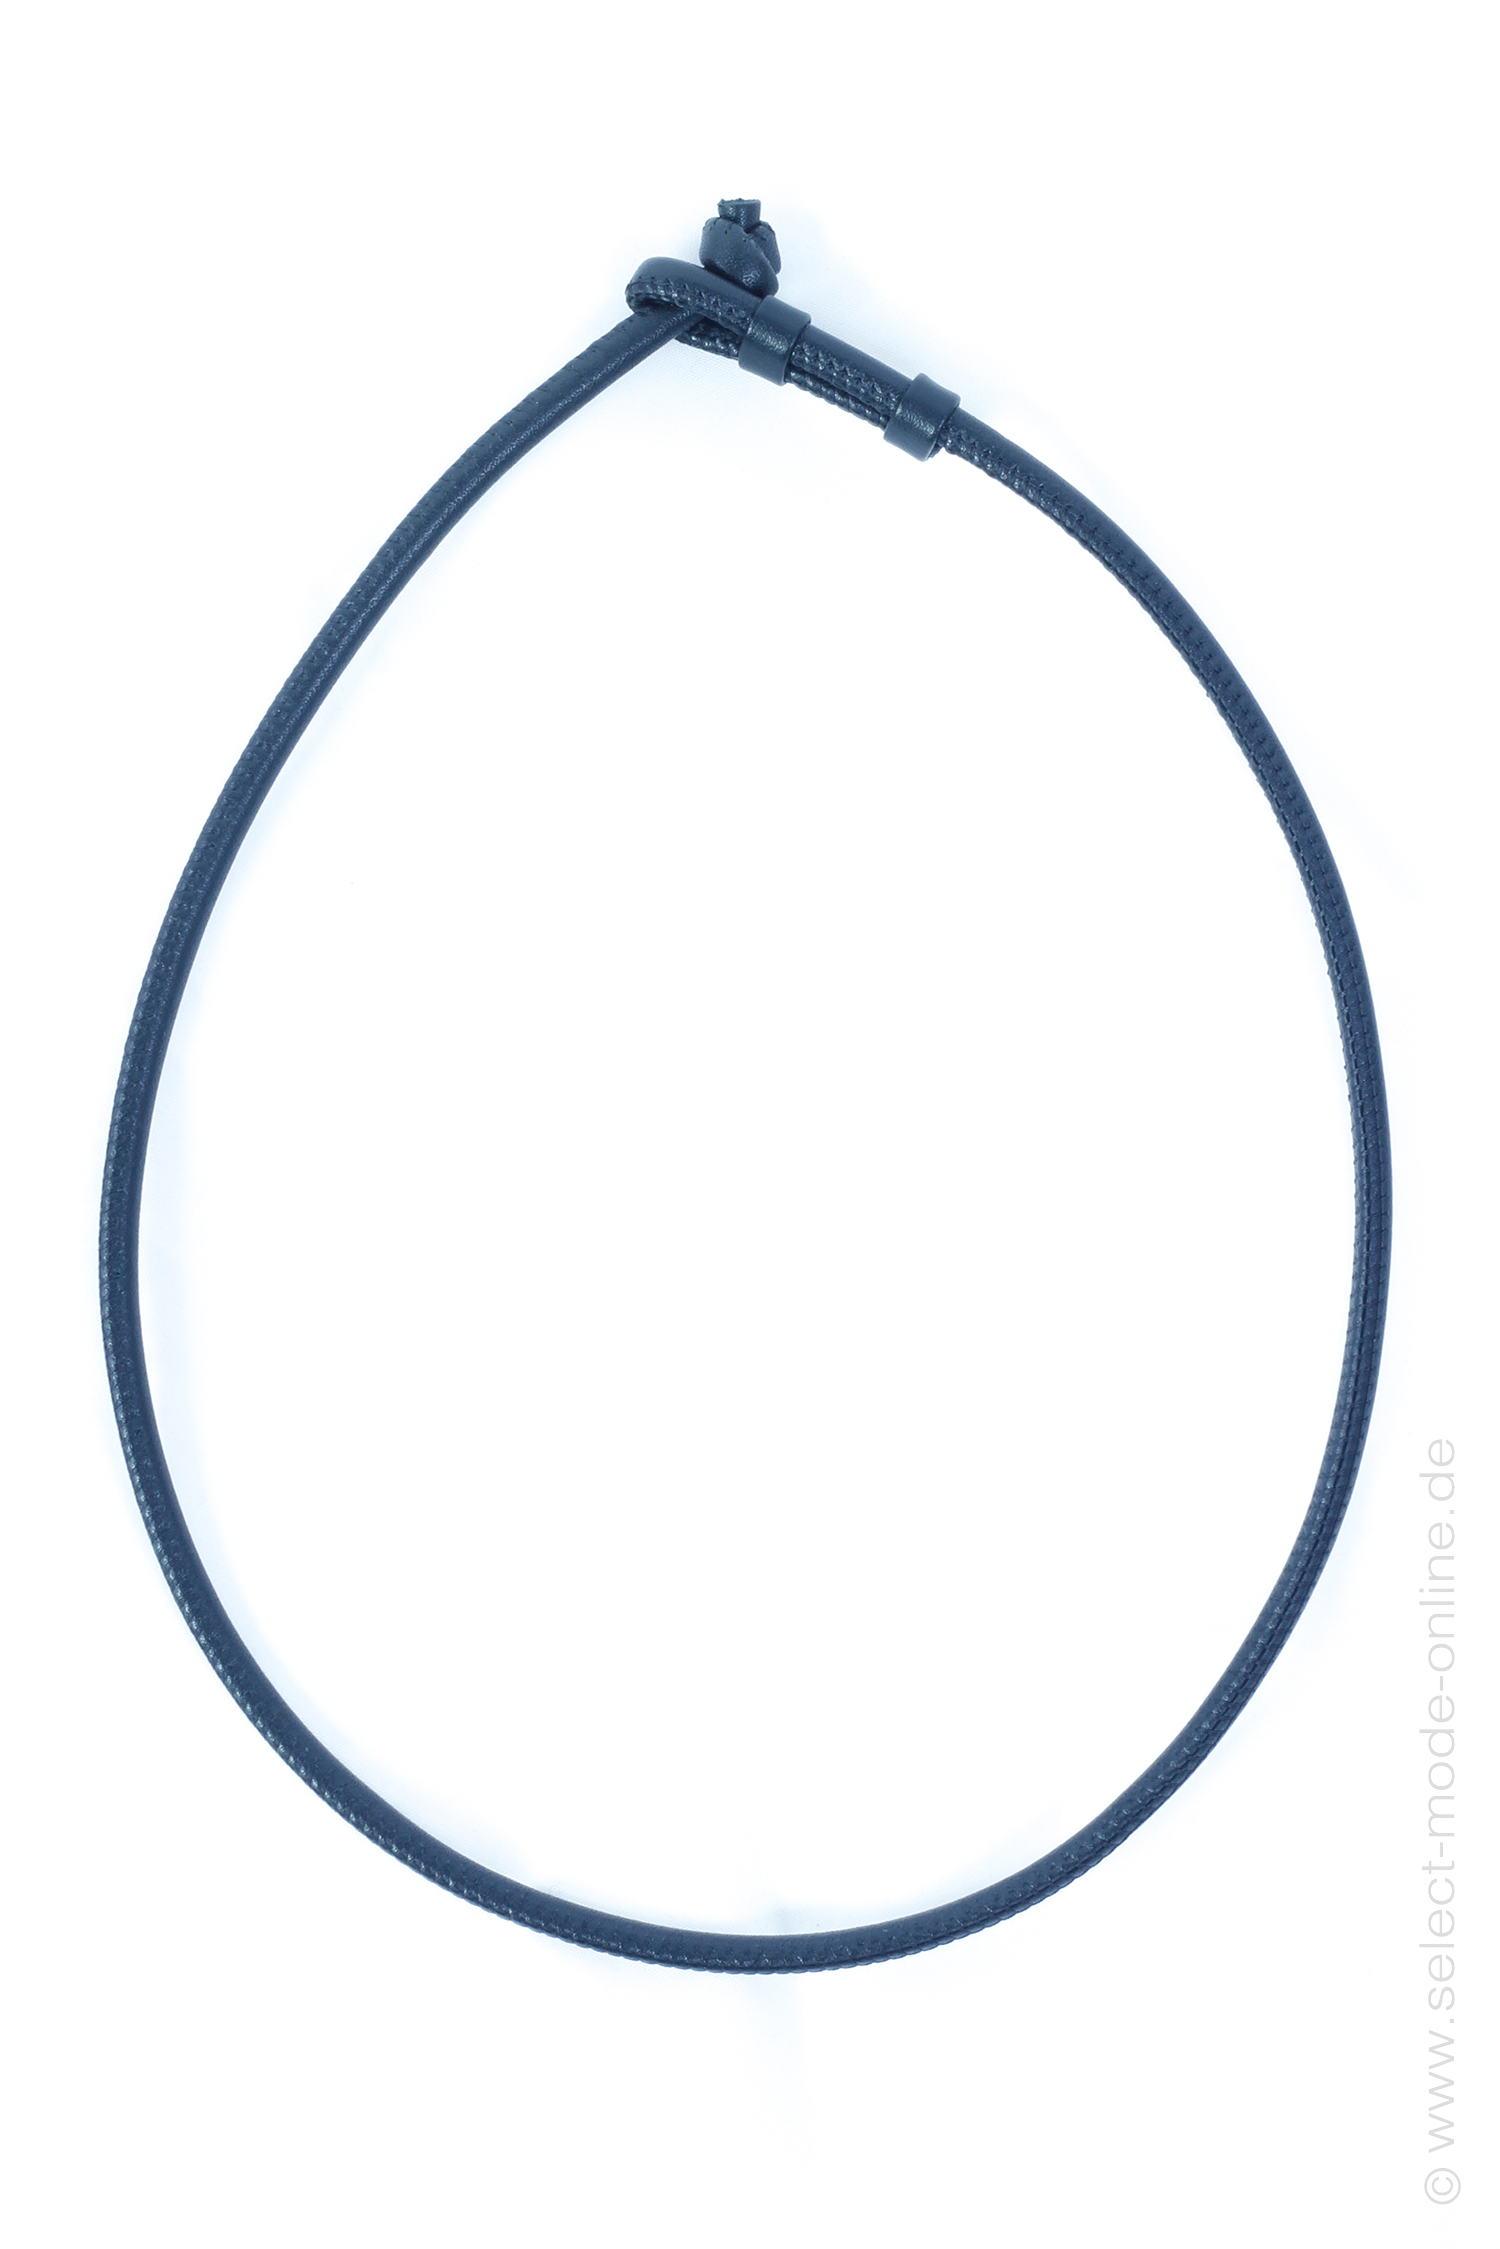 Leather necklace 1 - 60 cm - black - DG014